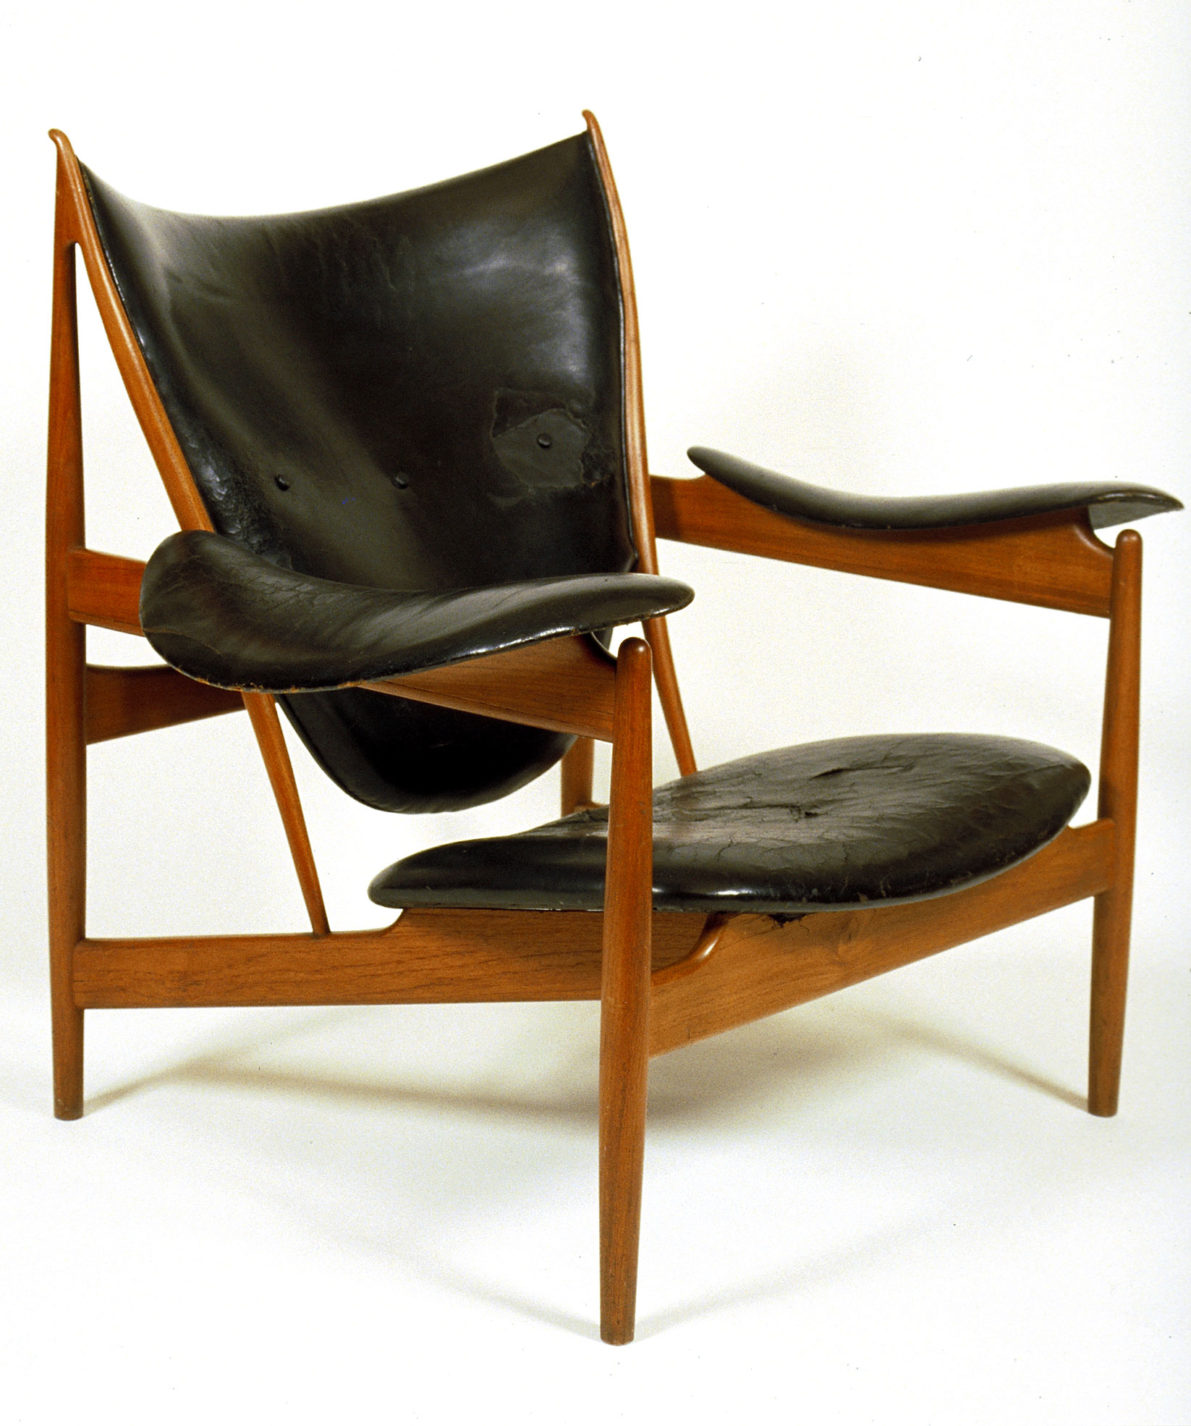 Fauteuil à structure de bois angulaire avec coussins de cuir lustré formant l’assise, le dossier et les accoudoirs.